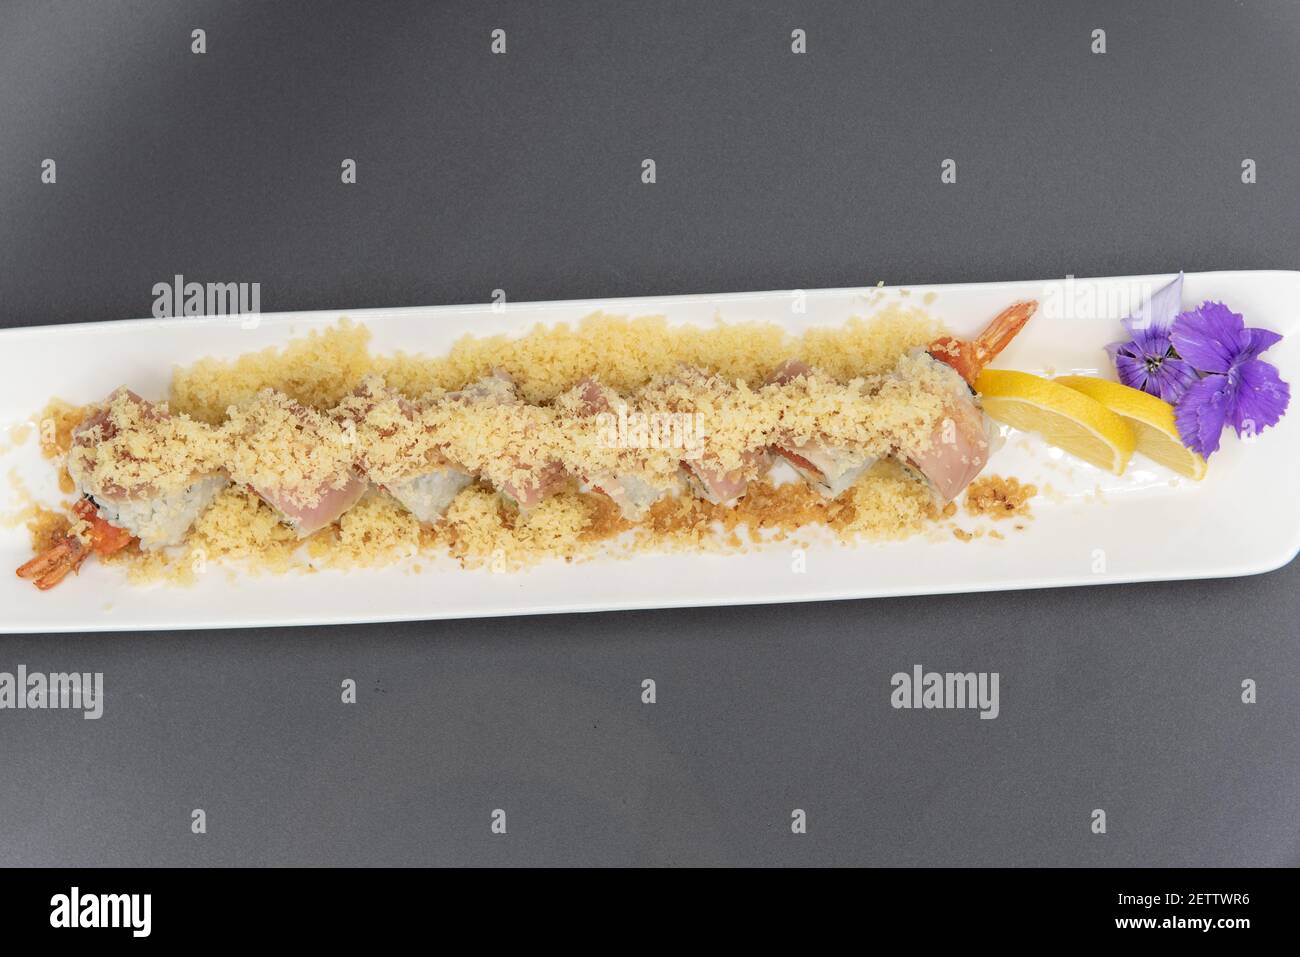 Vista dall'alto del sushi al tartufo di albacore sormontato con tempura croccante con bella presentazione su piatto guarnito con agrumi e un fiore. Foto Stock